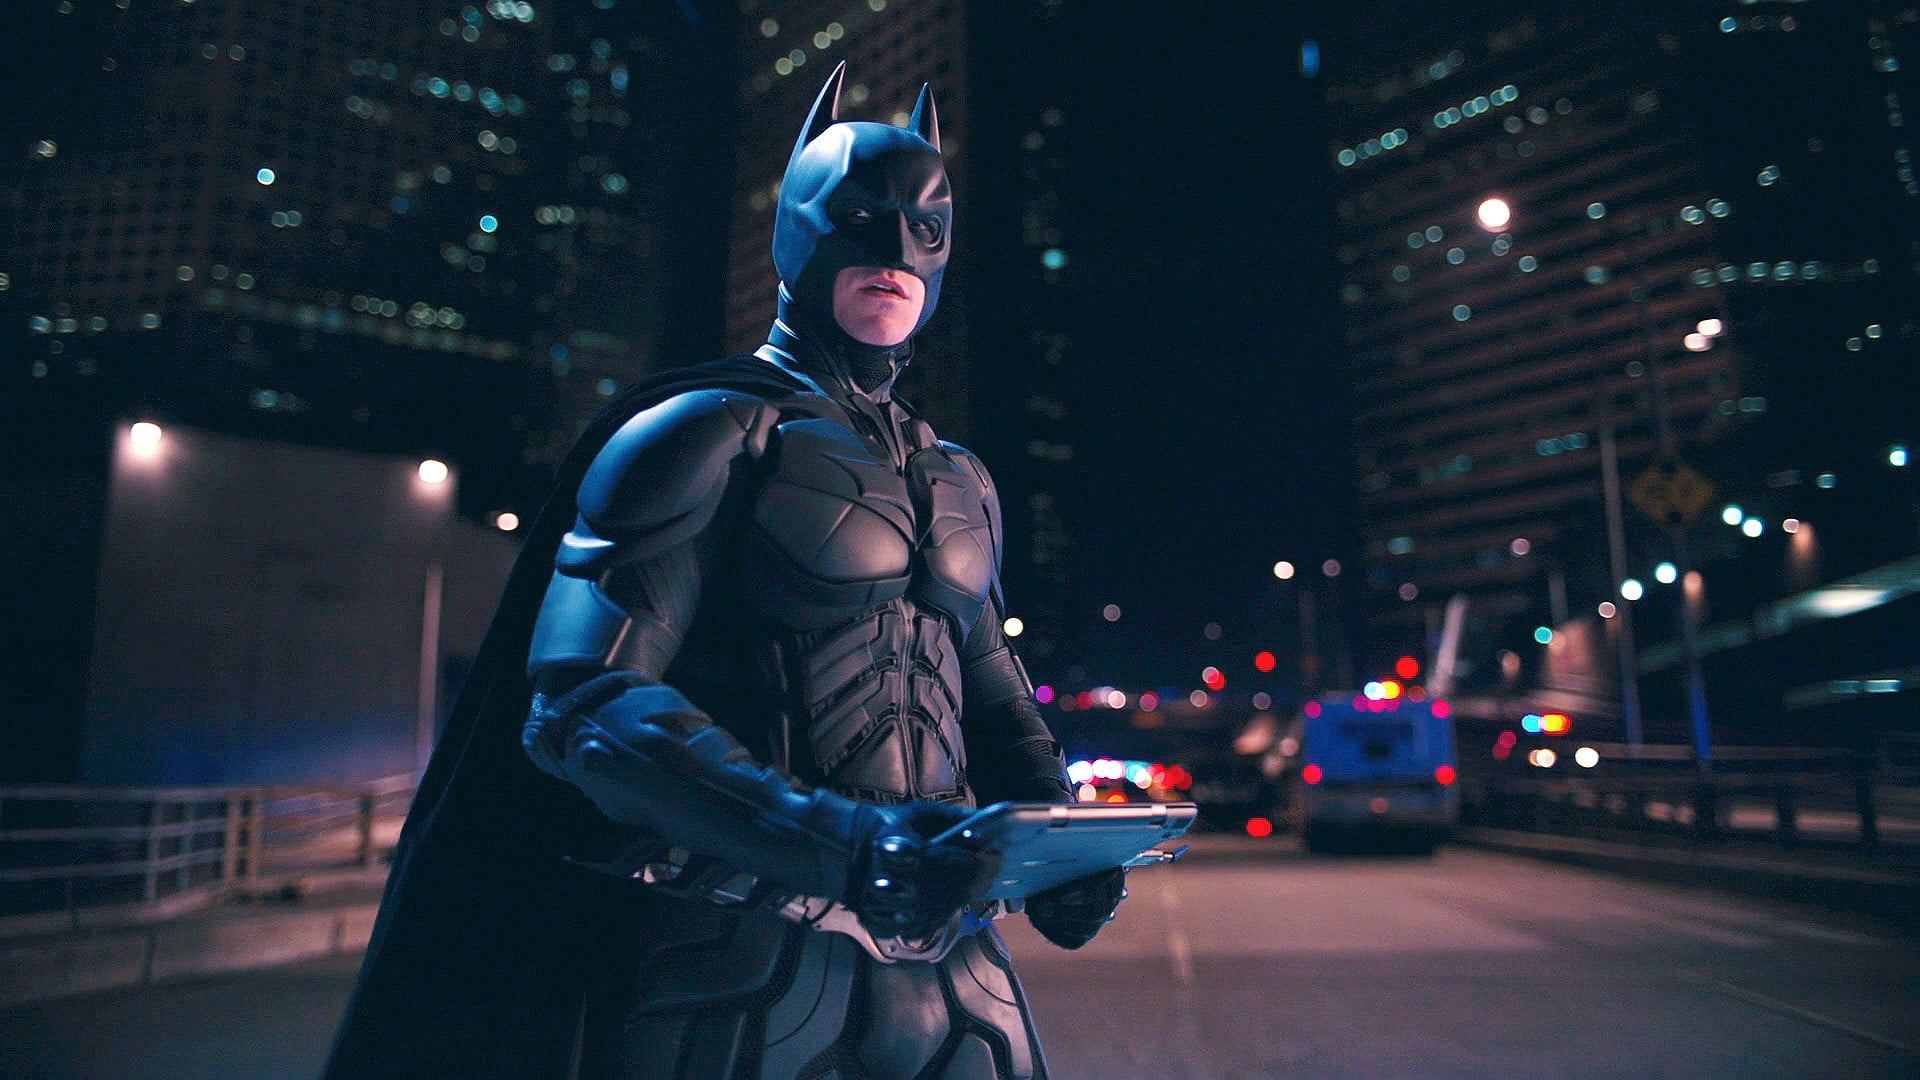 Batman, The Dark Knight Rises, Batman, Movies Hd Wallpaper - Dark Knight Rises , HD Wallpaper & Backgrounds